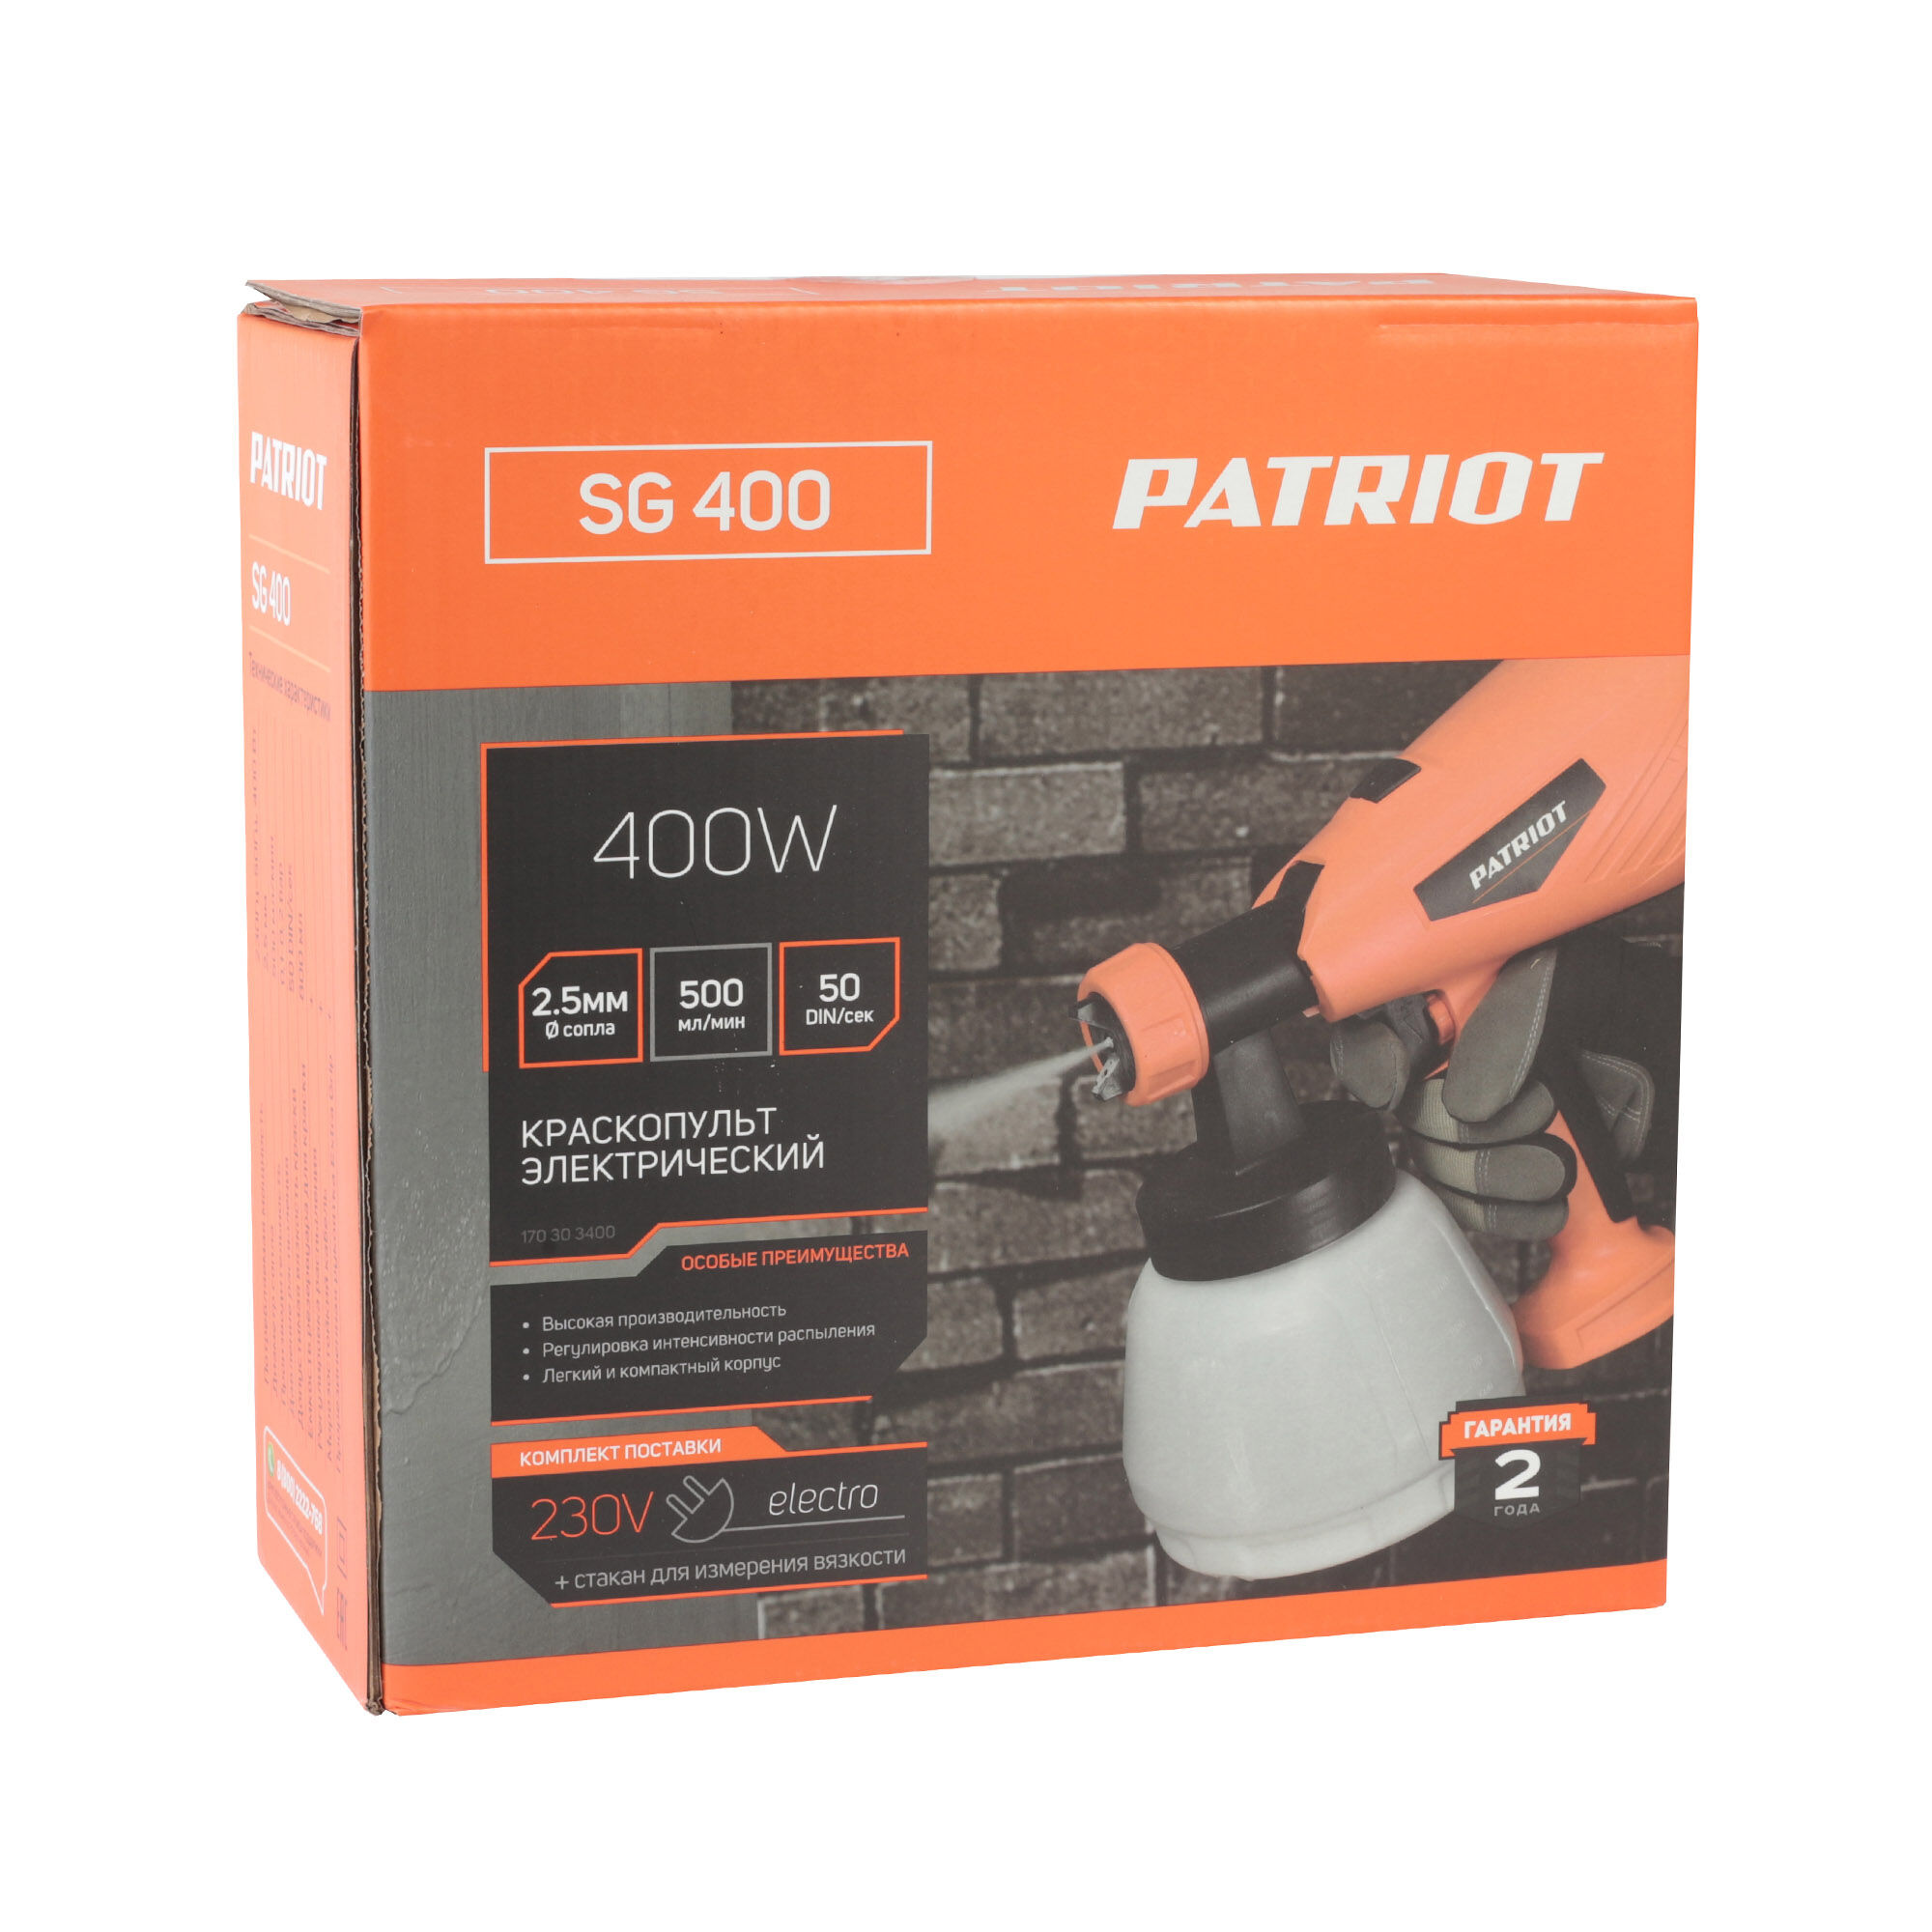 Краскопульт электрический PATRIOT SG 400 10